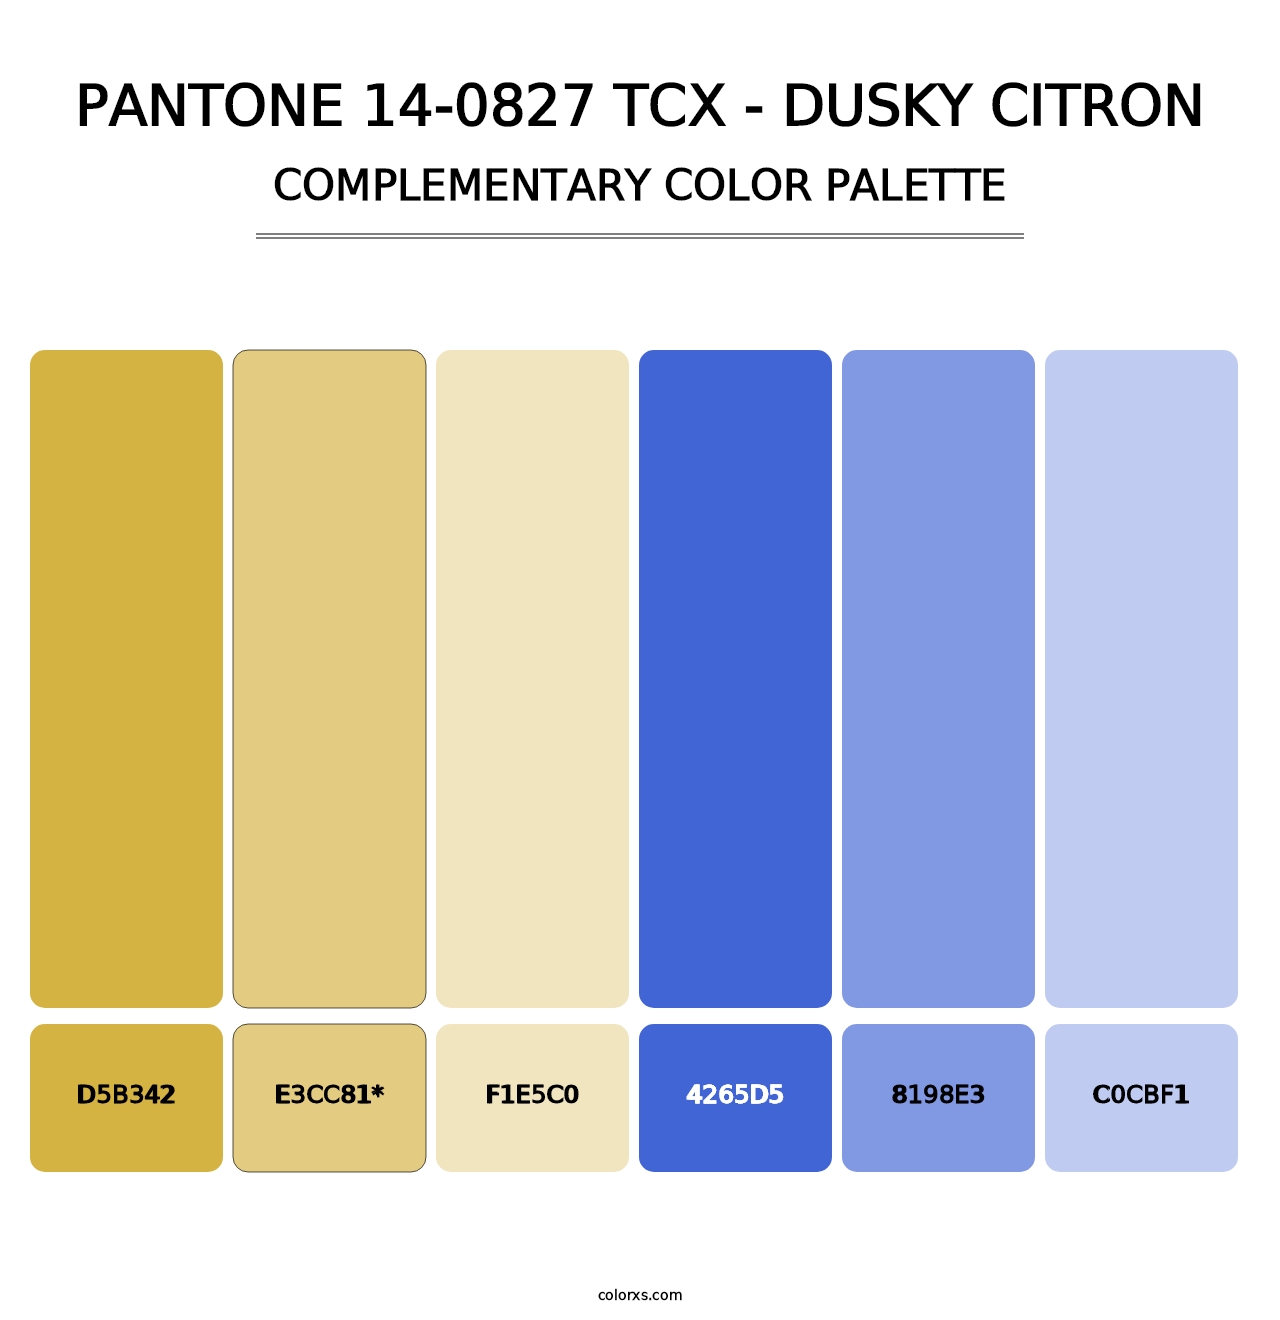 PANTONE 14-0827 TCX - Dusky Citron - Complementary Color Palette